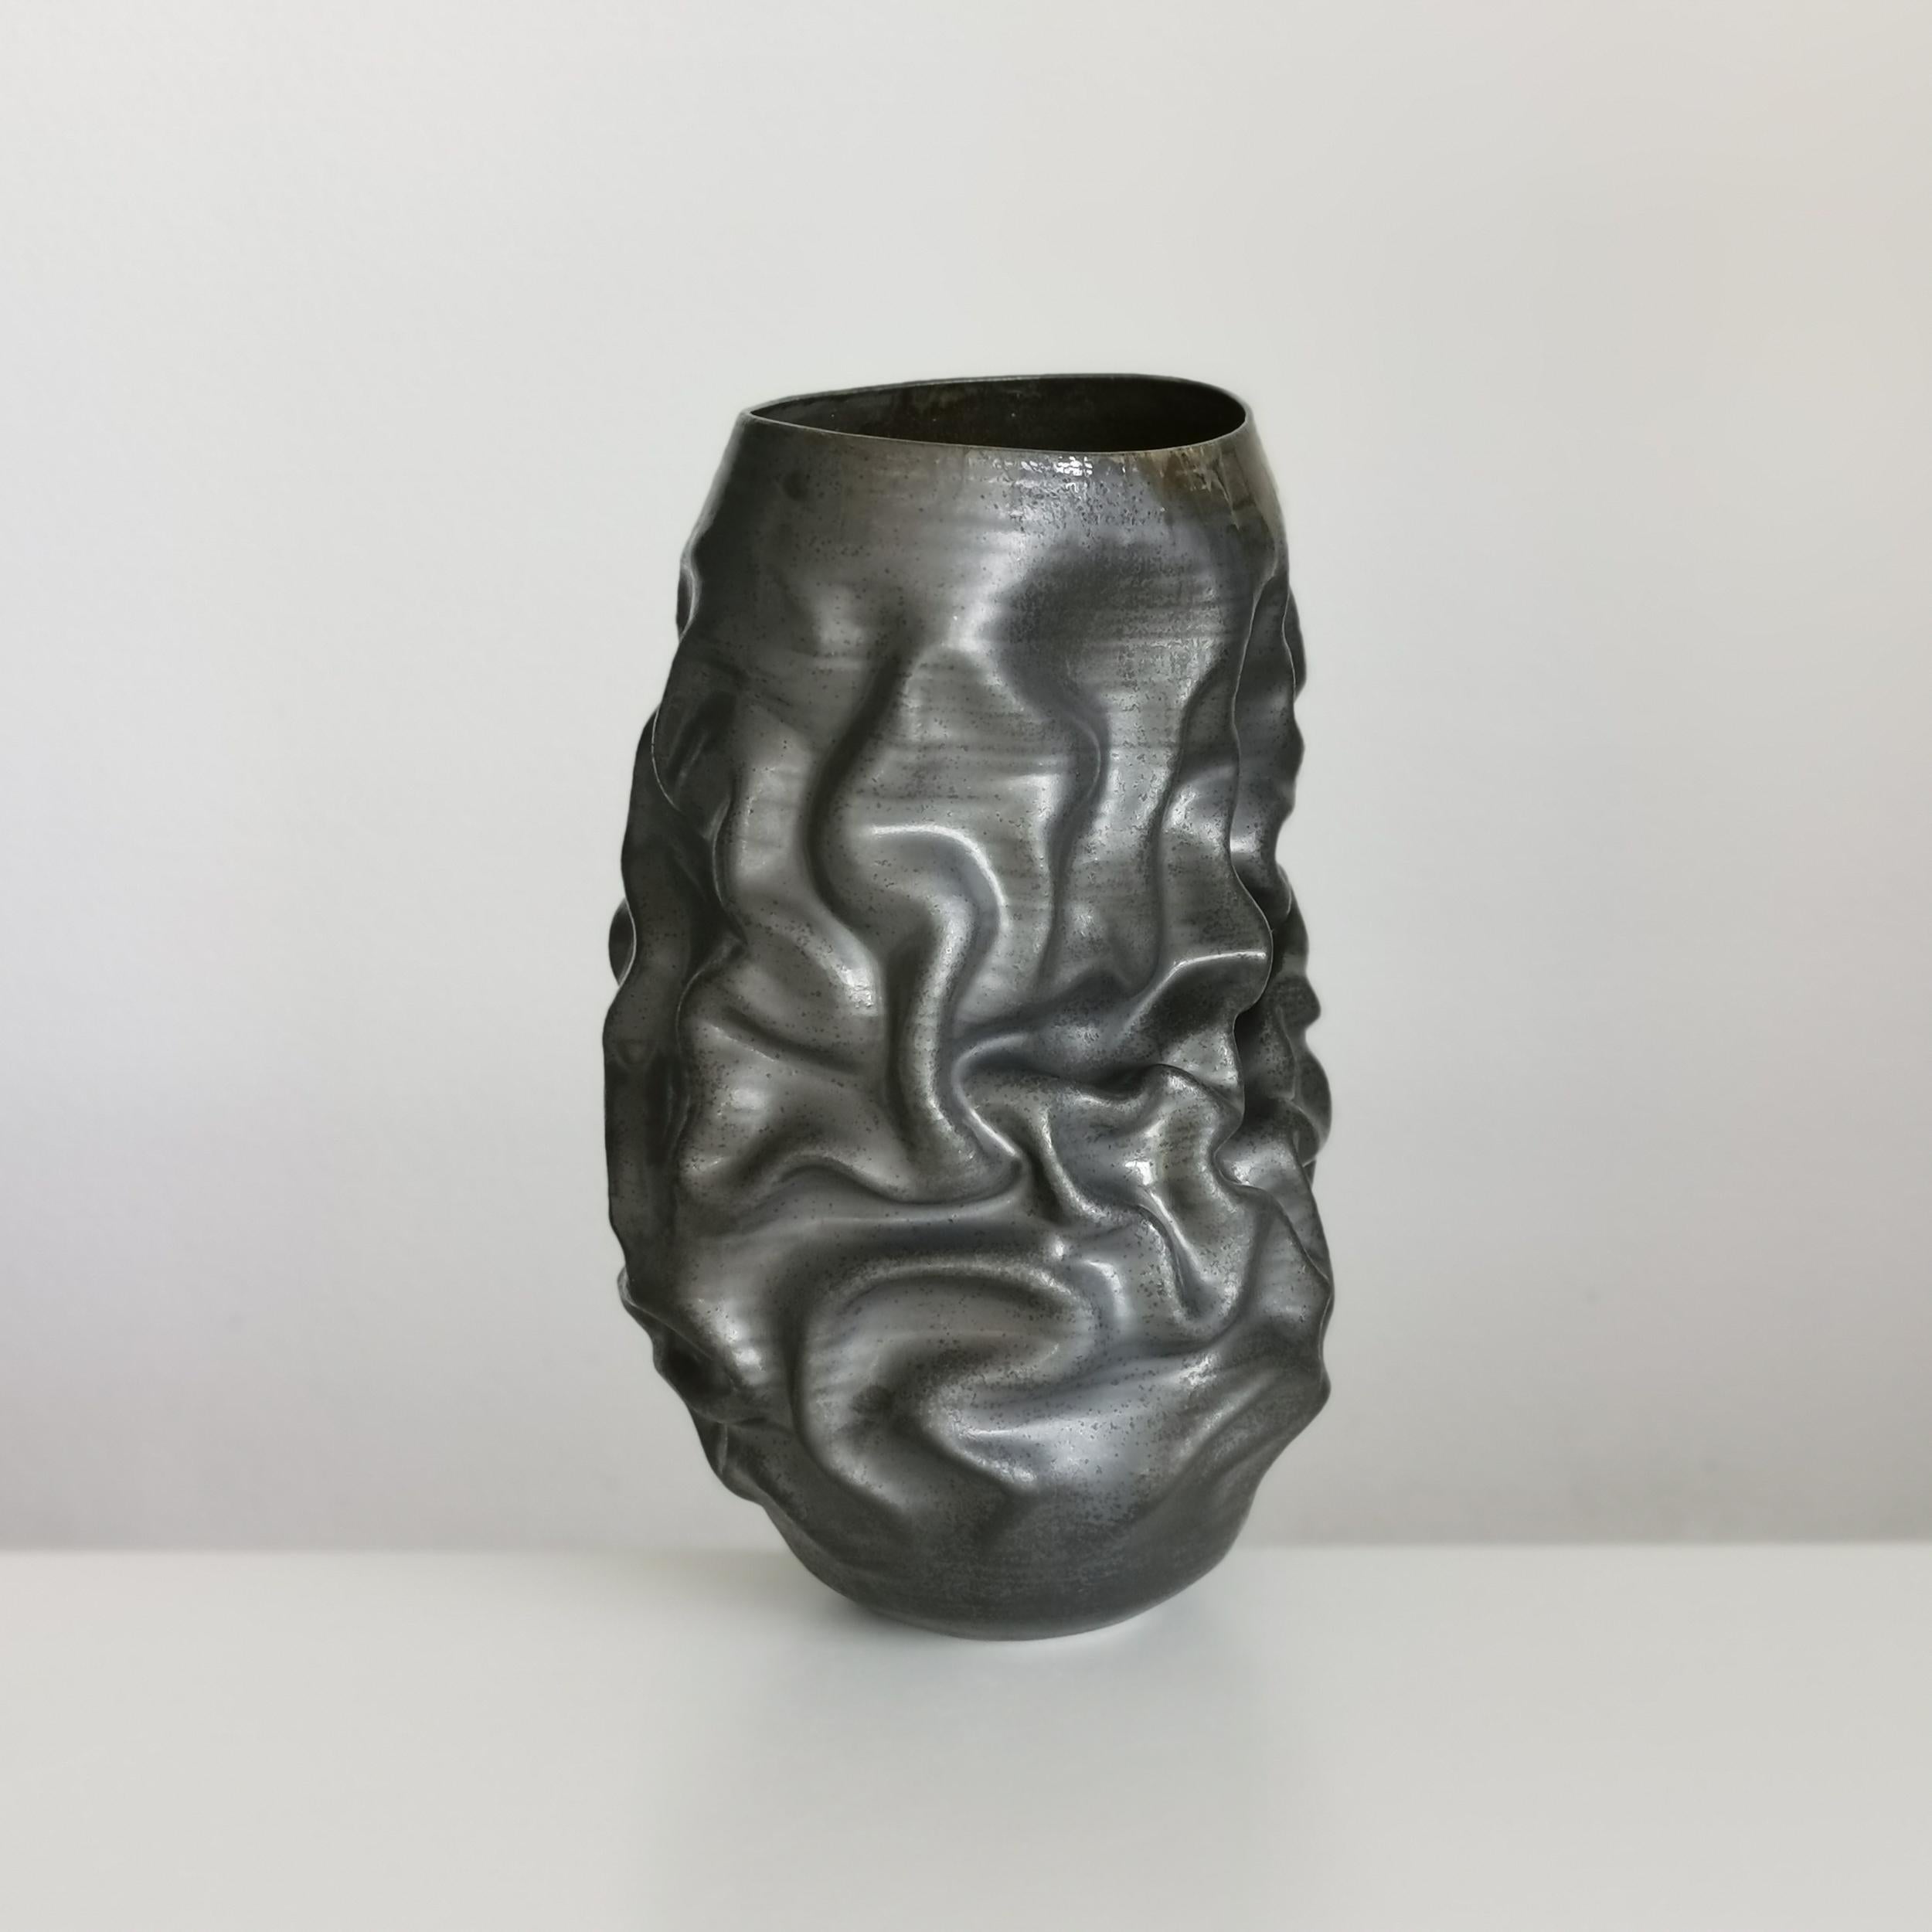 Clay Pair of Unique Ceramic Sculptures Vessels 'Water Landscapes' Objet d'Art For Sale